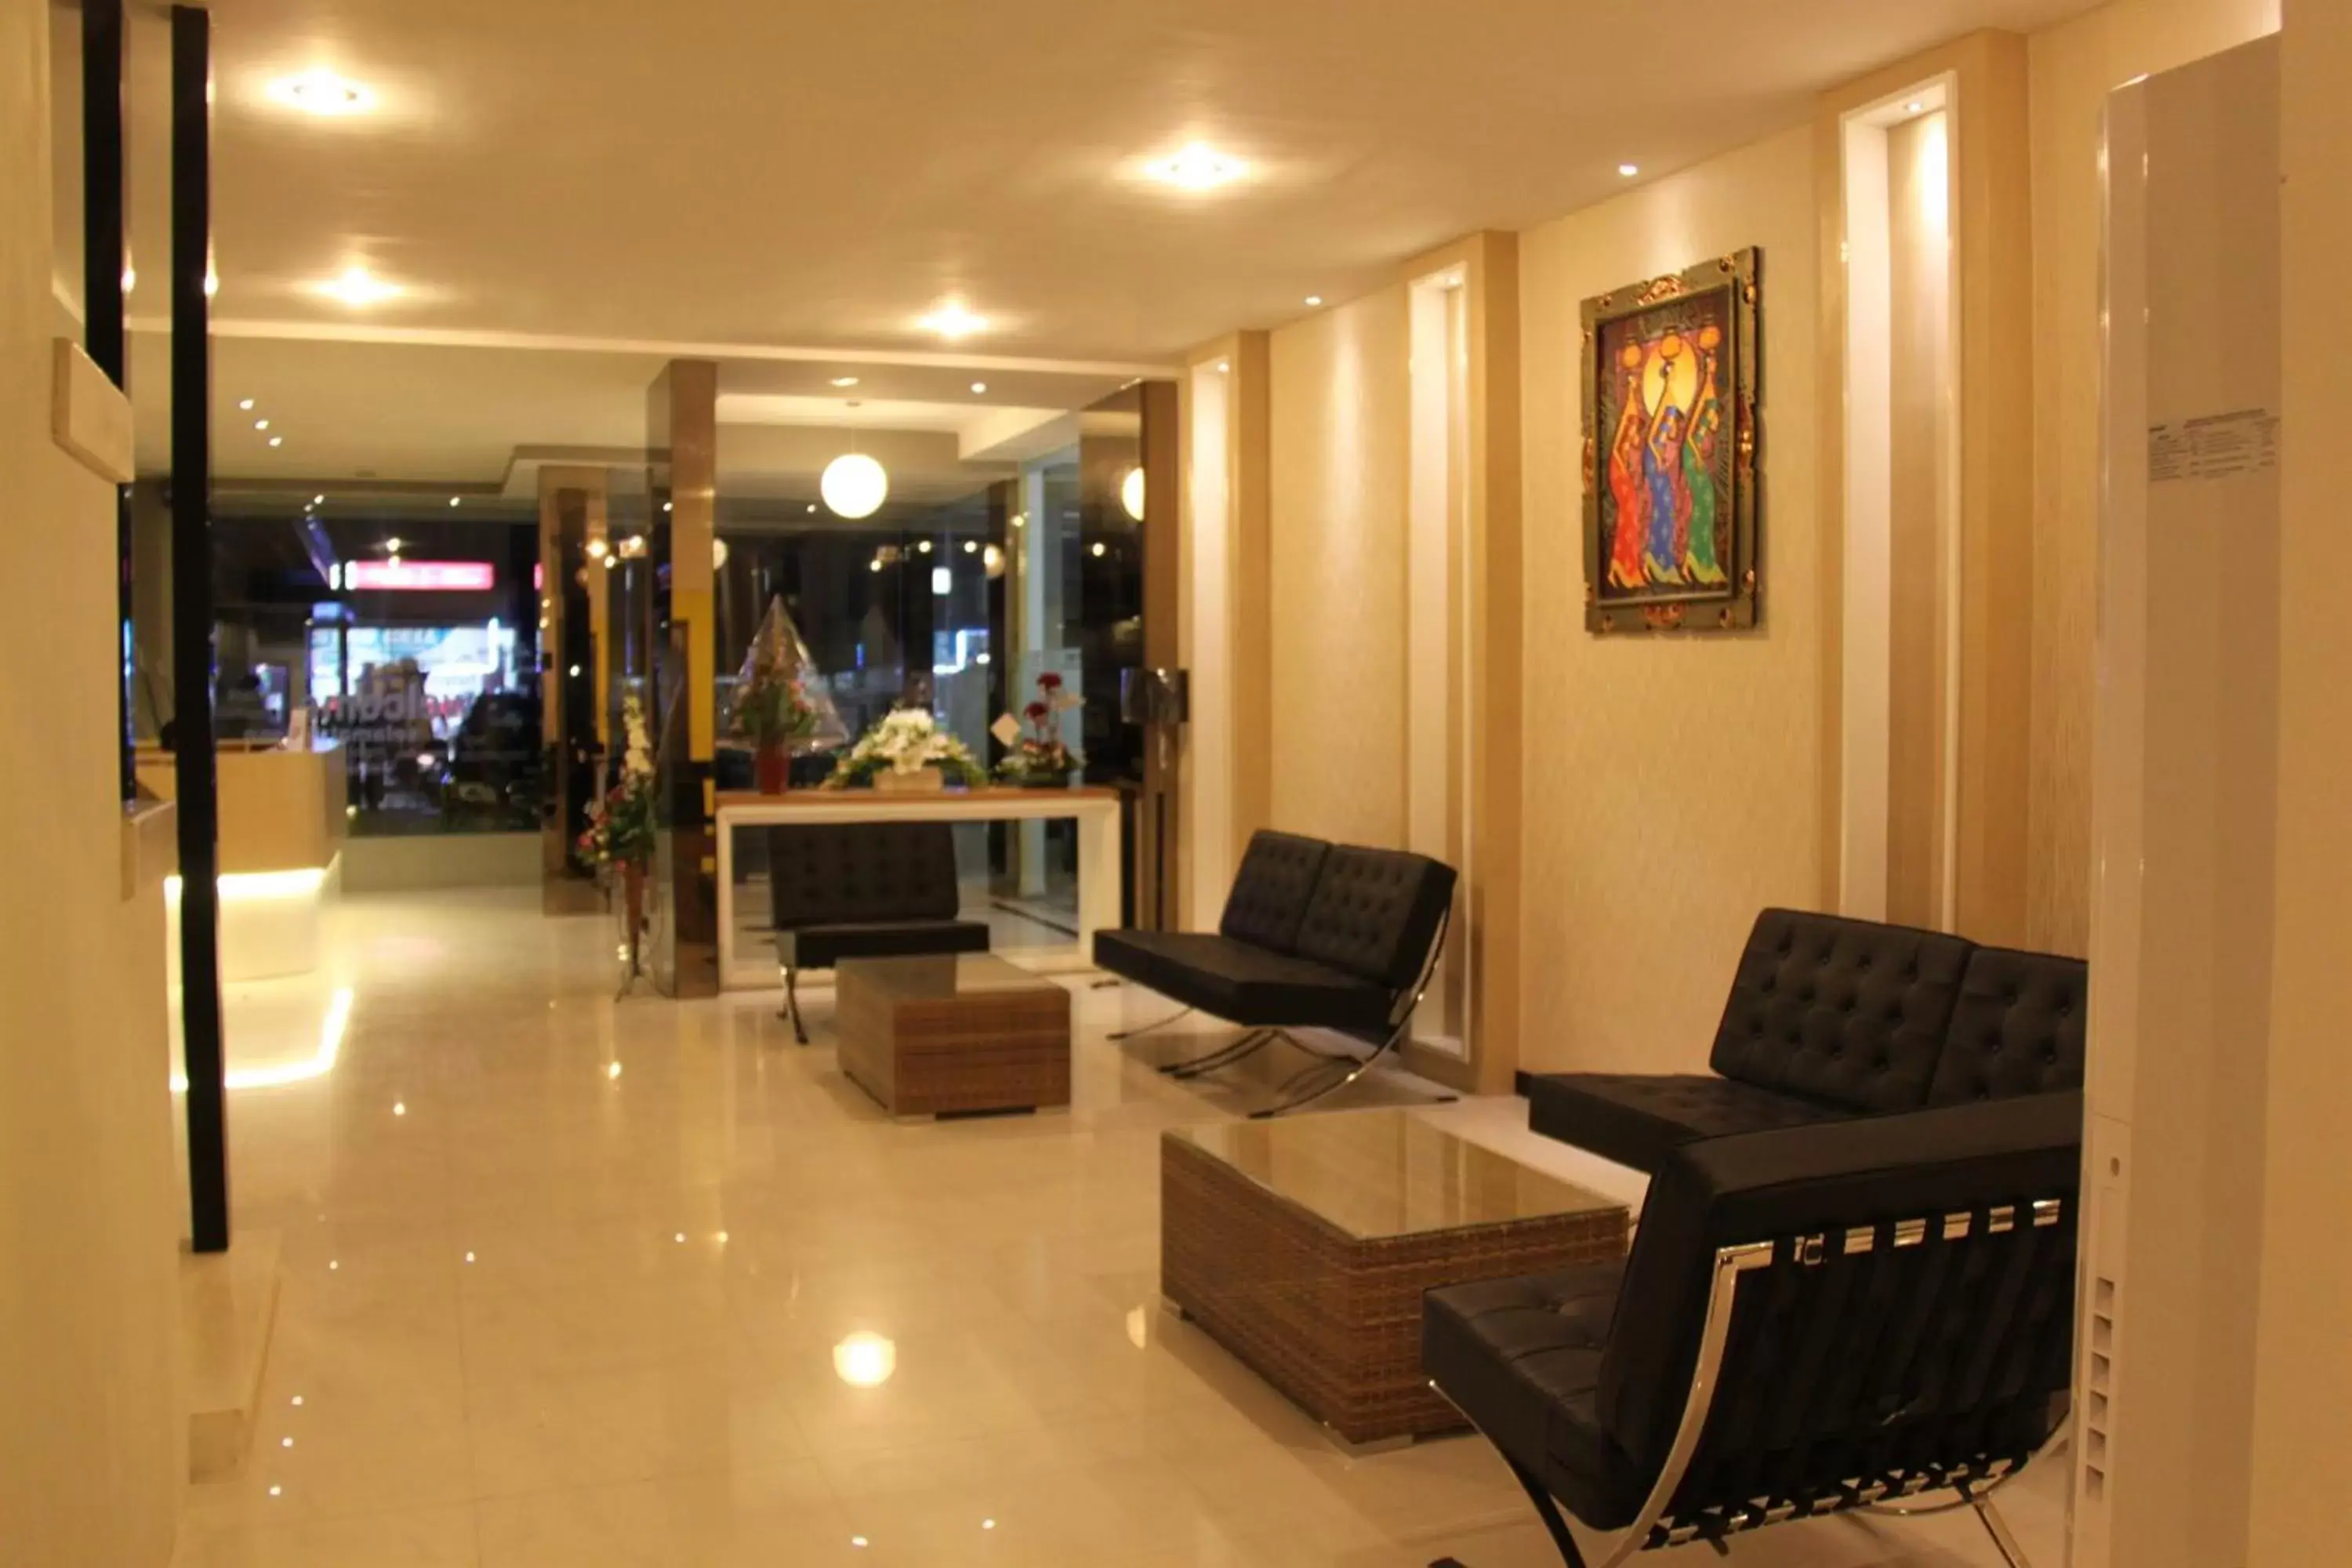 Lounge or bar, Lobby/Reception in SWK 95 Hotel